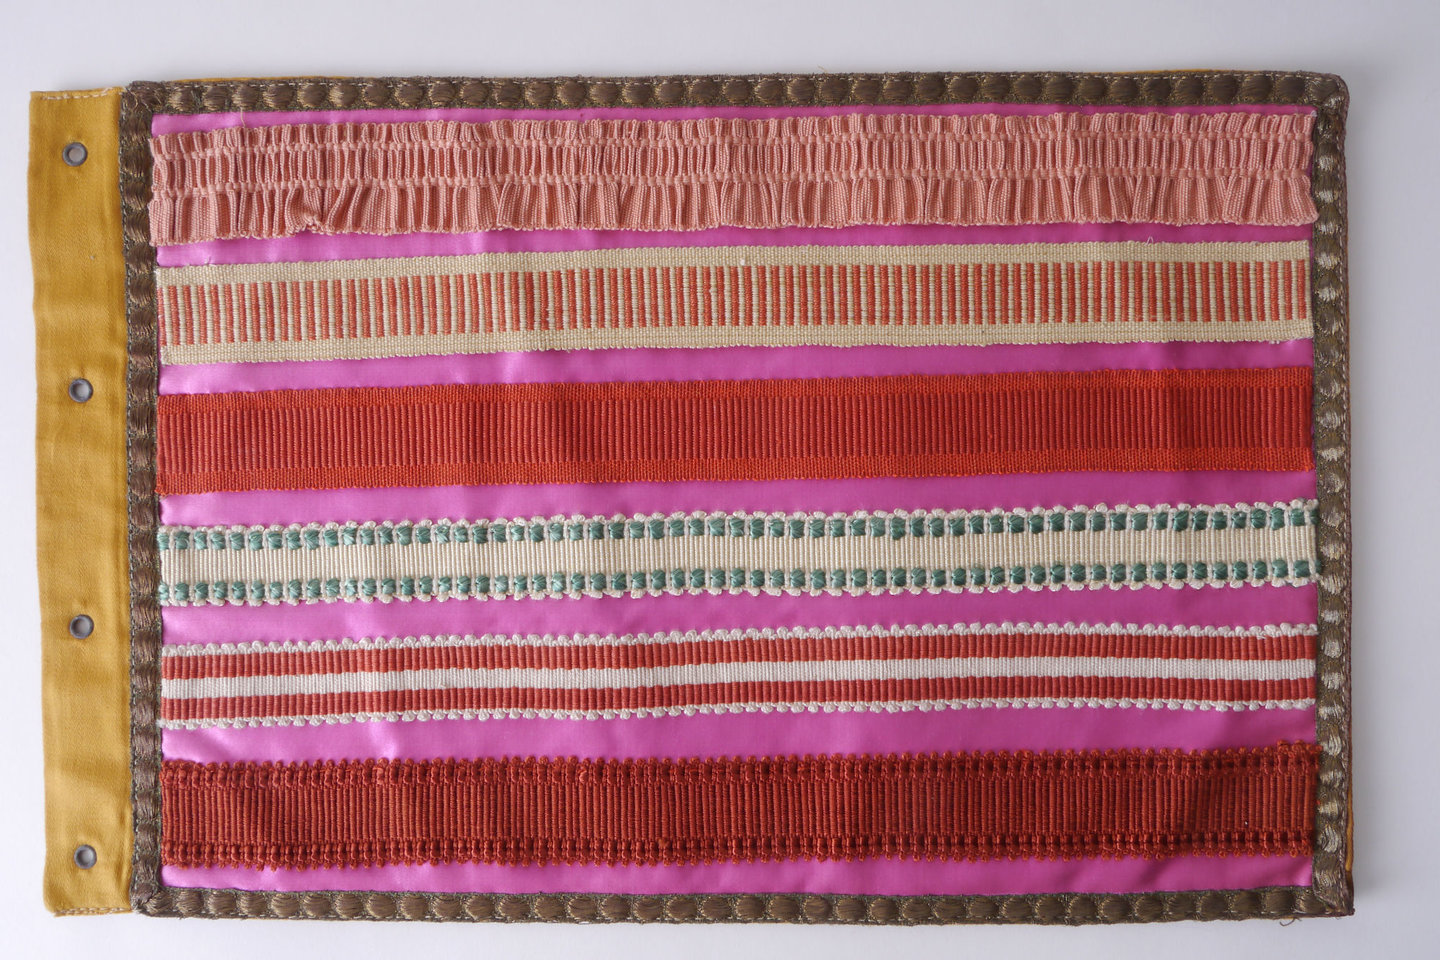 Staalkaart in textiel met voorbeelden van galons om passement te vervaardigen